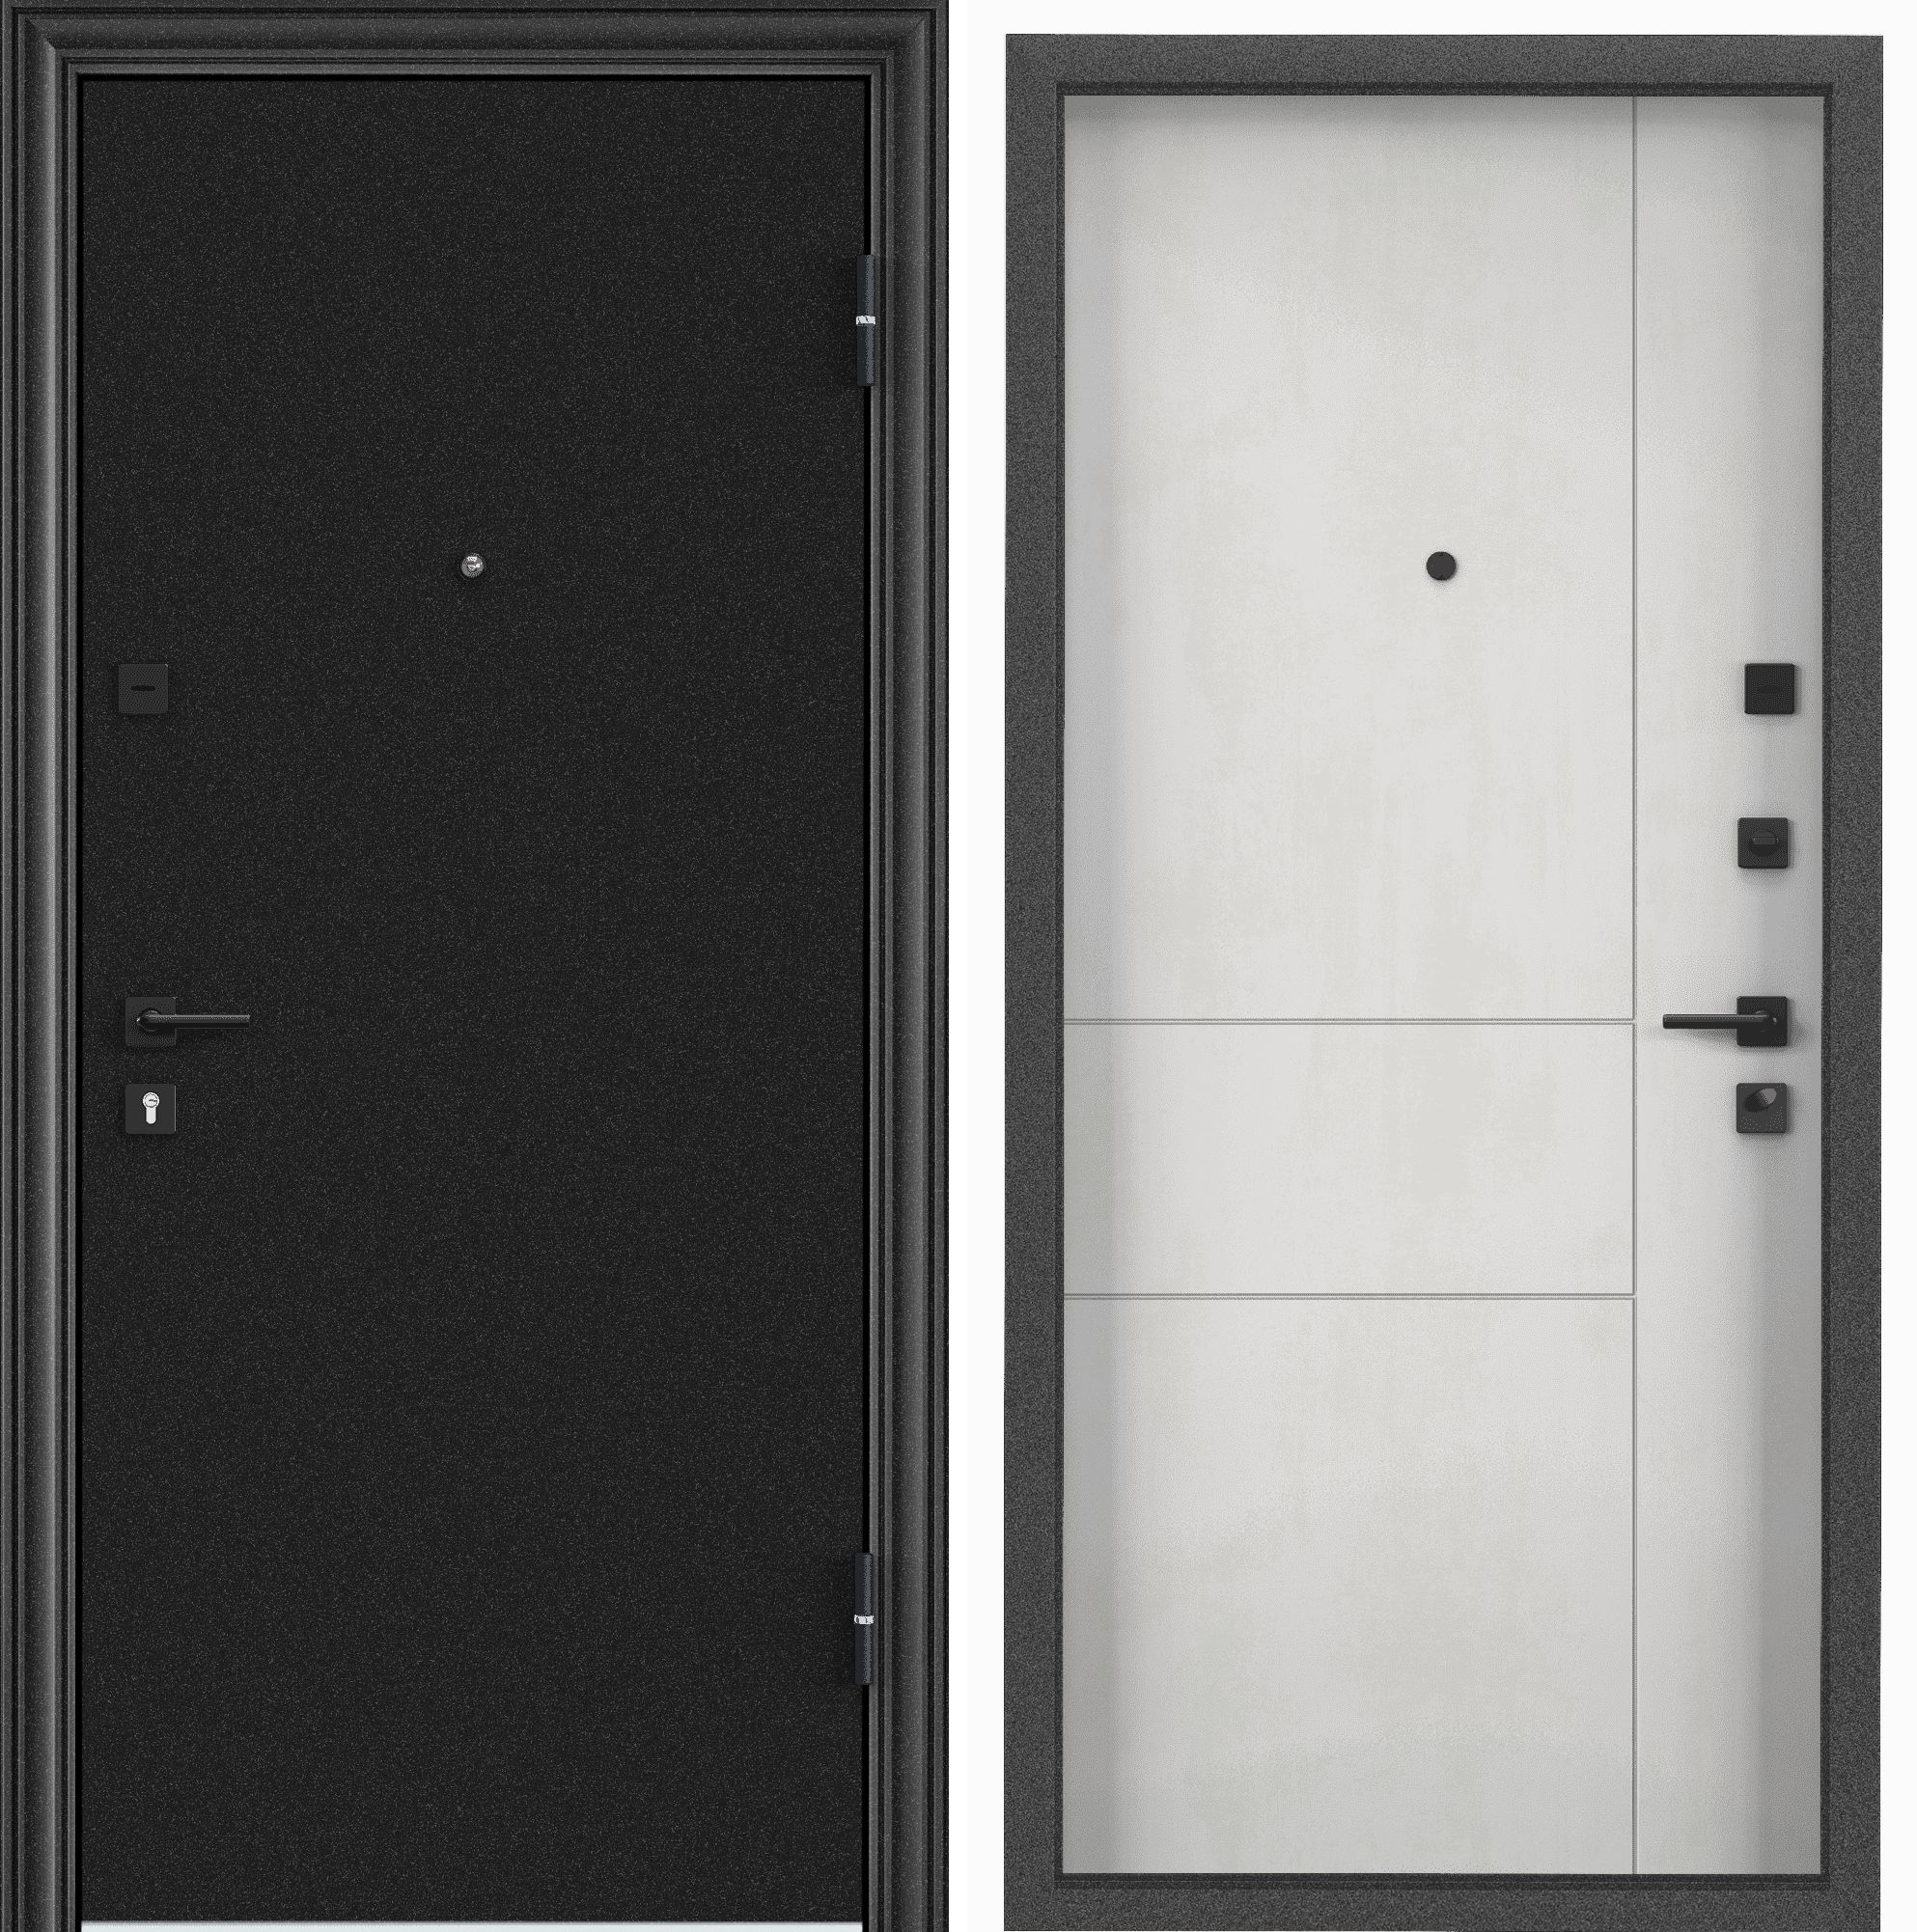 Дверь входная для квартиры металлическая Torex Flat-M 860х2050, правый, темно-серый/бетон дверь входная buldoors ютта левая букле шоколад ларче бьянко с зеркалом 860х2050 мм